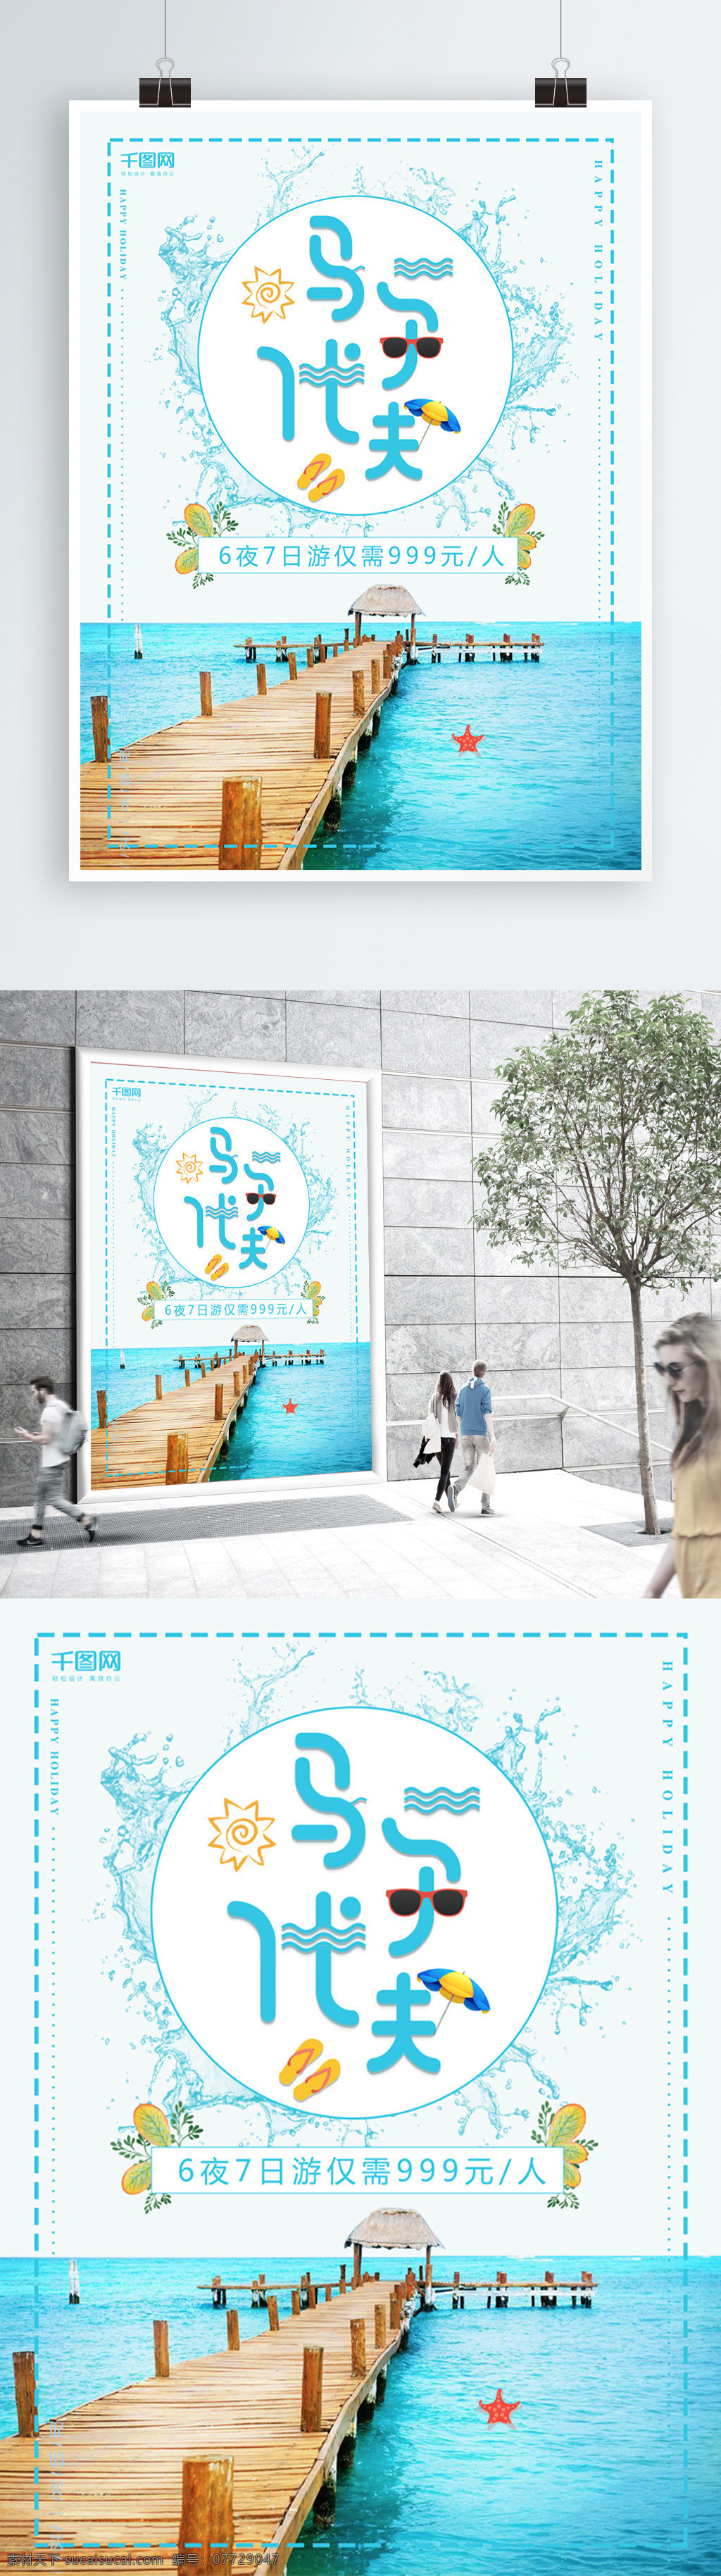 简约 小 清新 马尔代夫 旅游 海报 海边 海岛旅游 旅行社海报 旅游促销 旅游海报 小清新